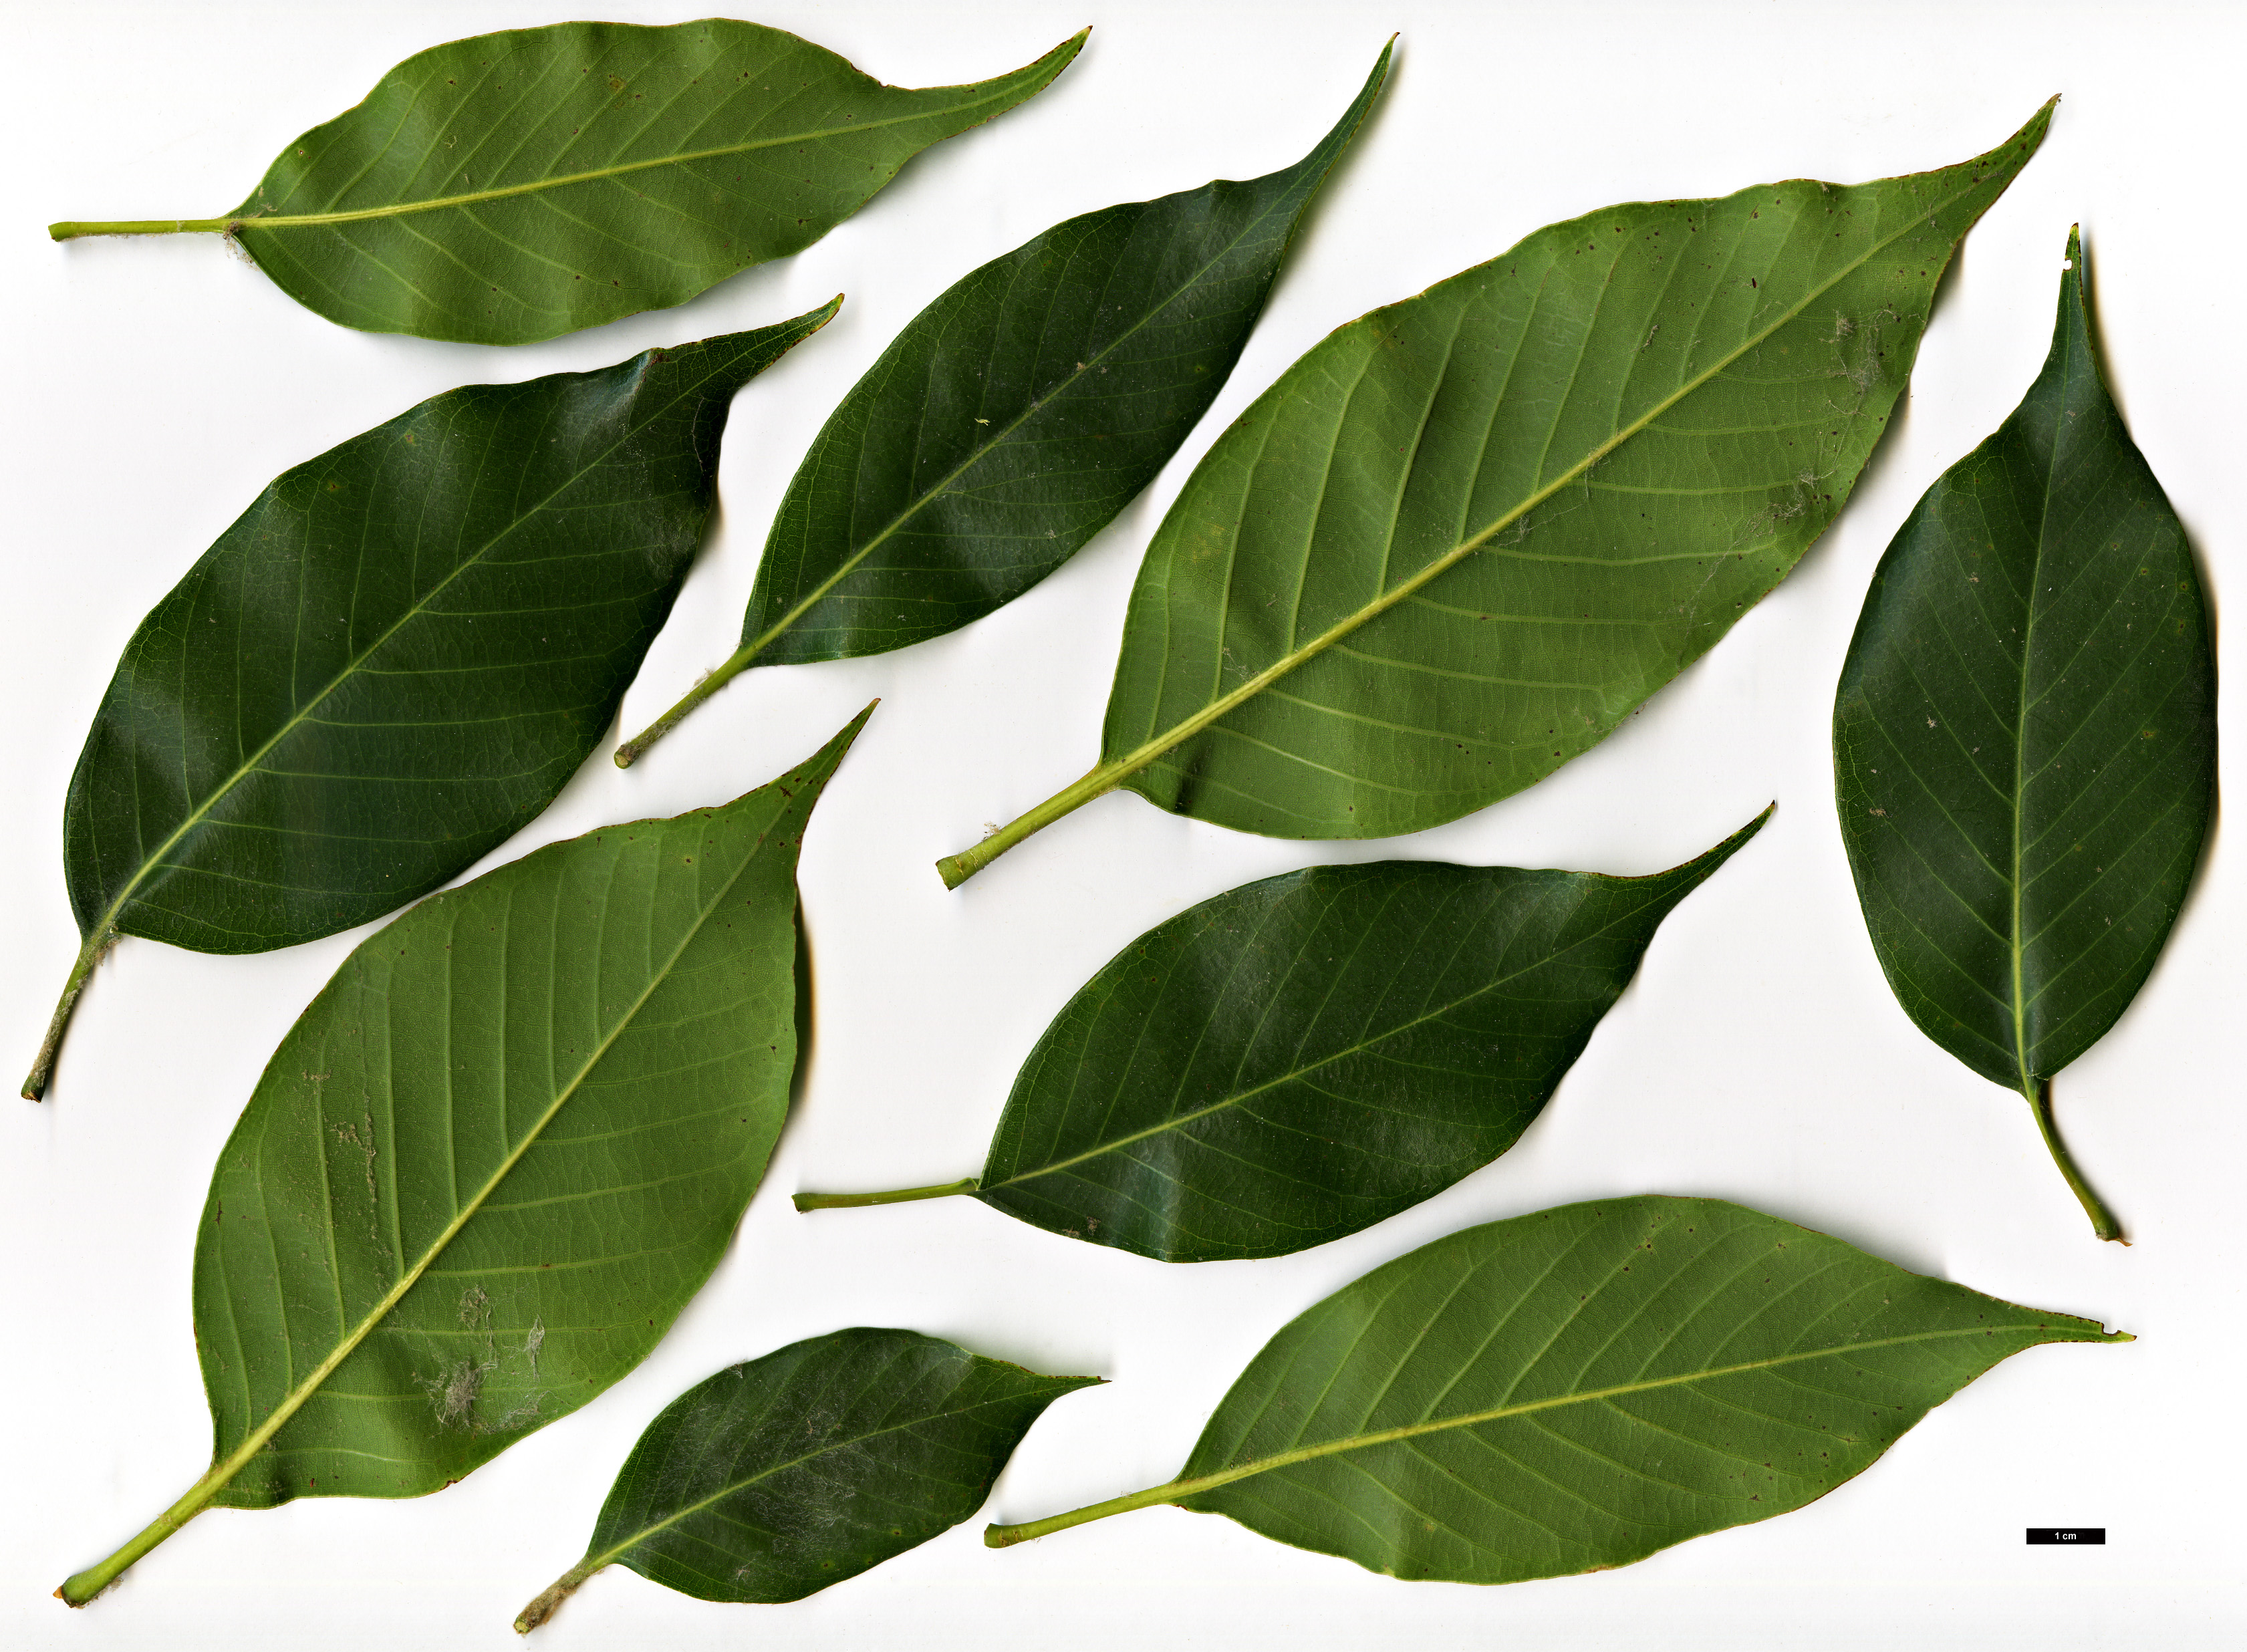 High resolution image: Family: Fagaceae - Genus: Quercus - Taxon: acuta